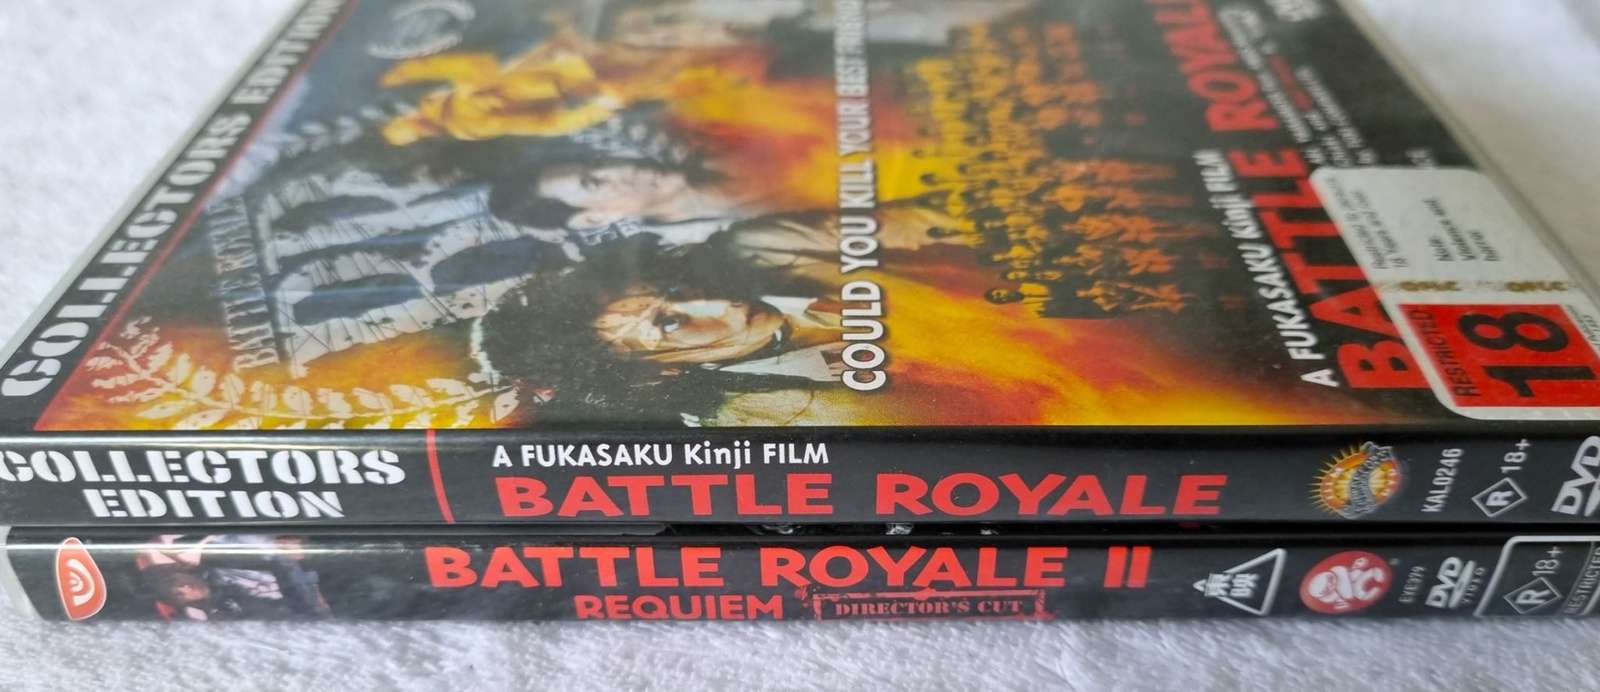 Battle Royale & Battle Royale II: Requiem